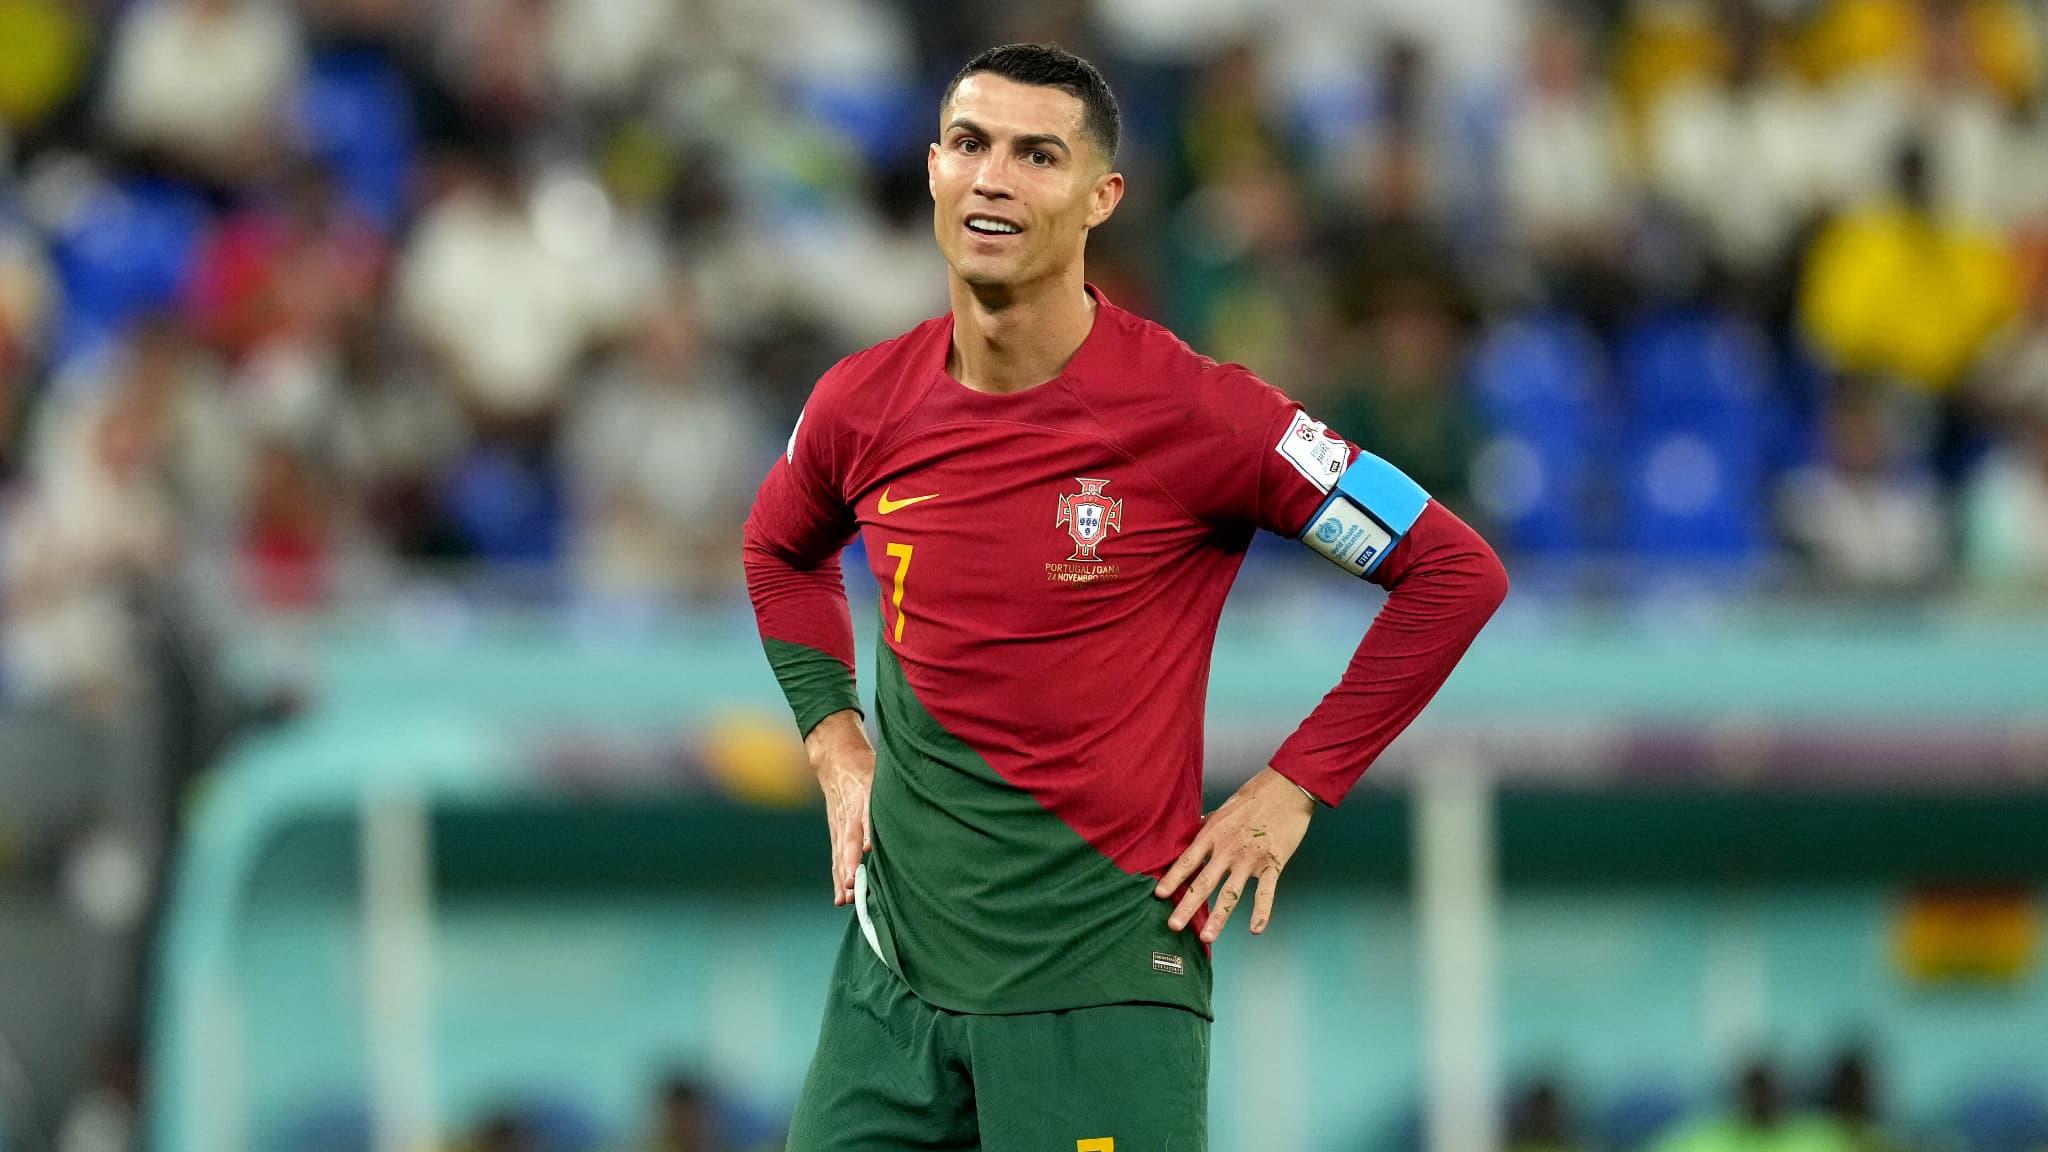 Top hình nền Ronaldo CR7 đẹp nhất 2021